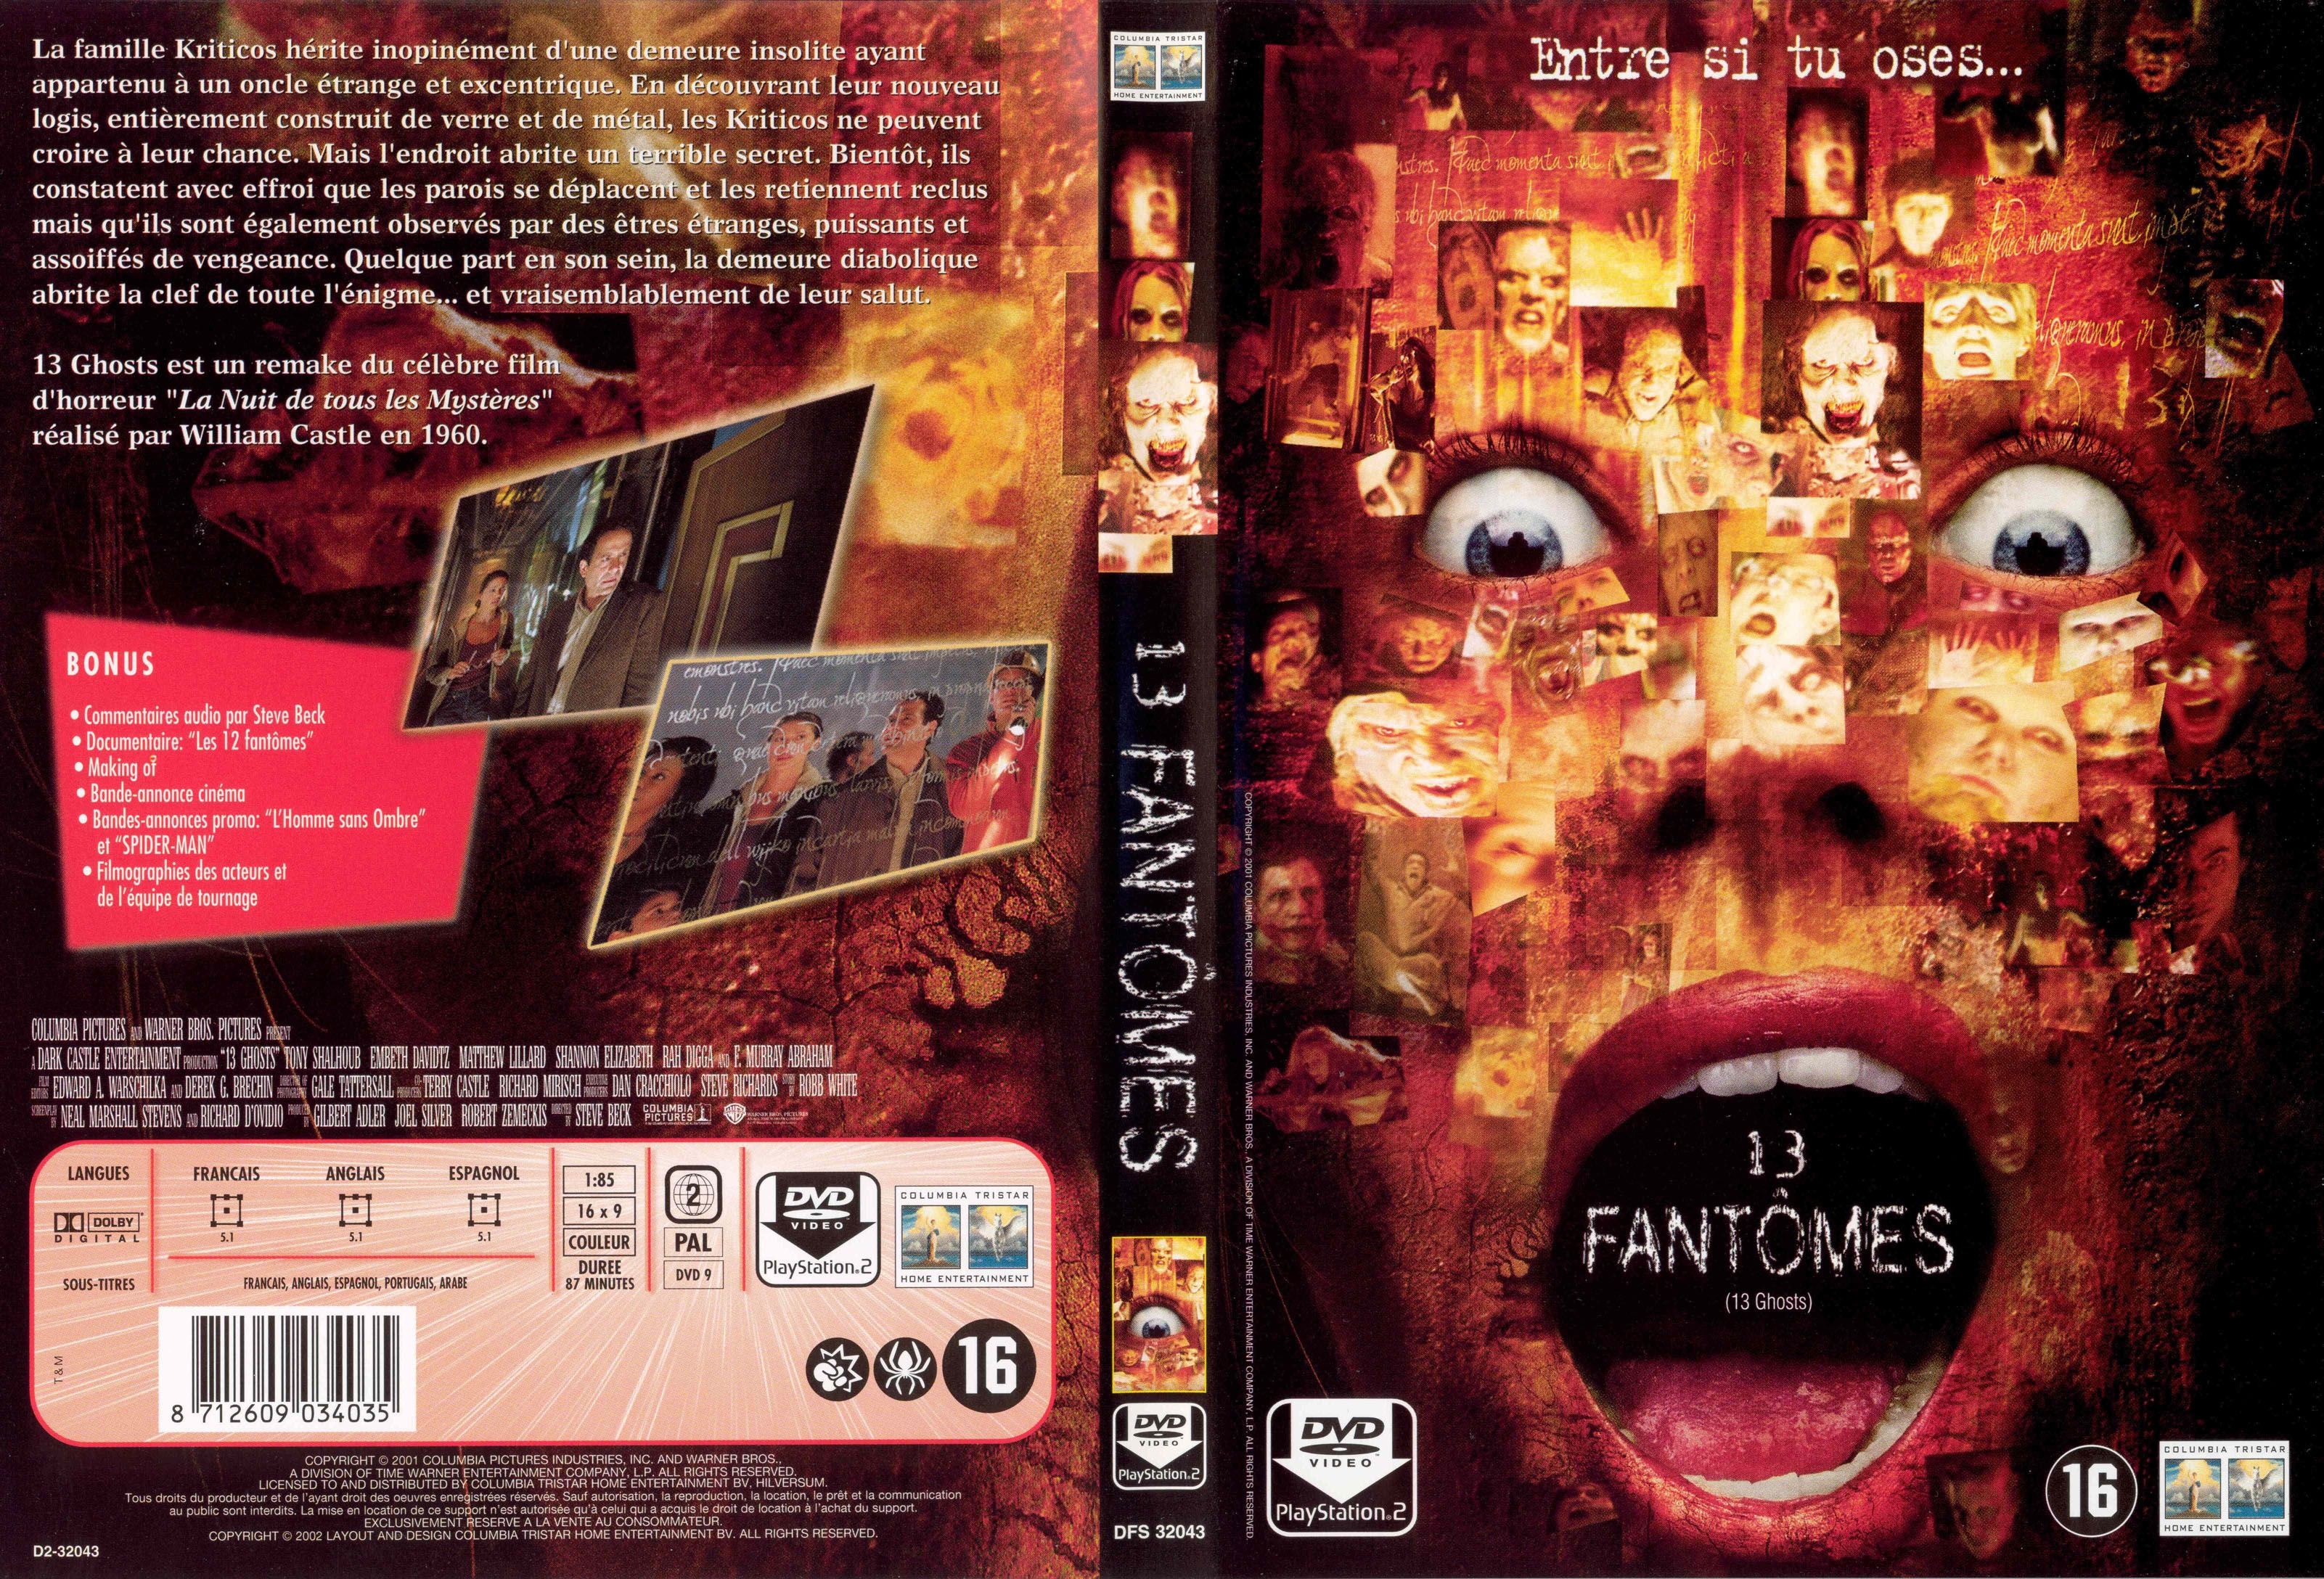 Jaquette DVD 13 fantomes v2